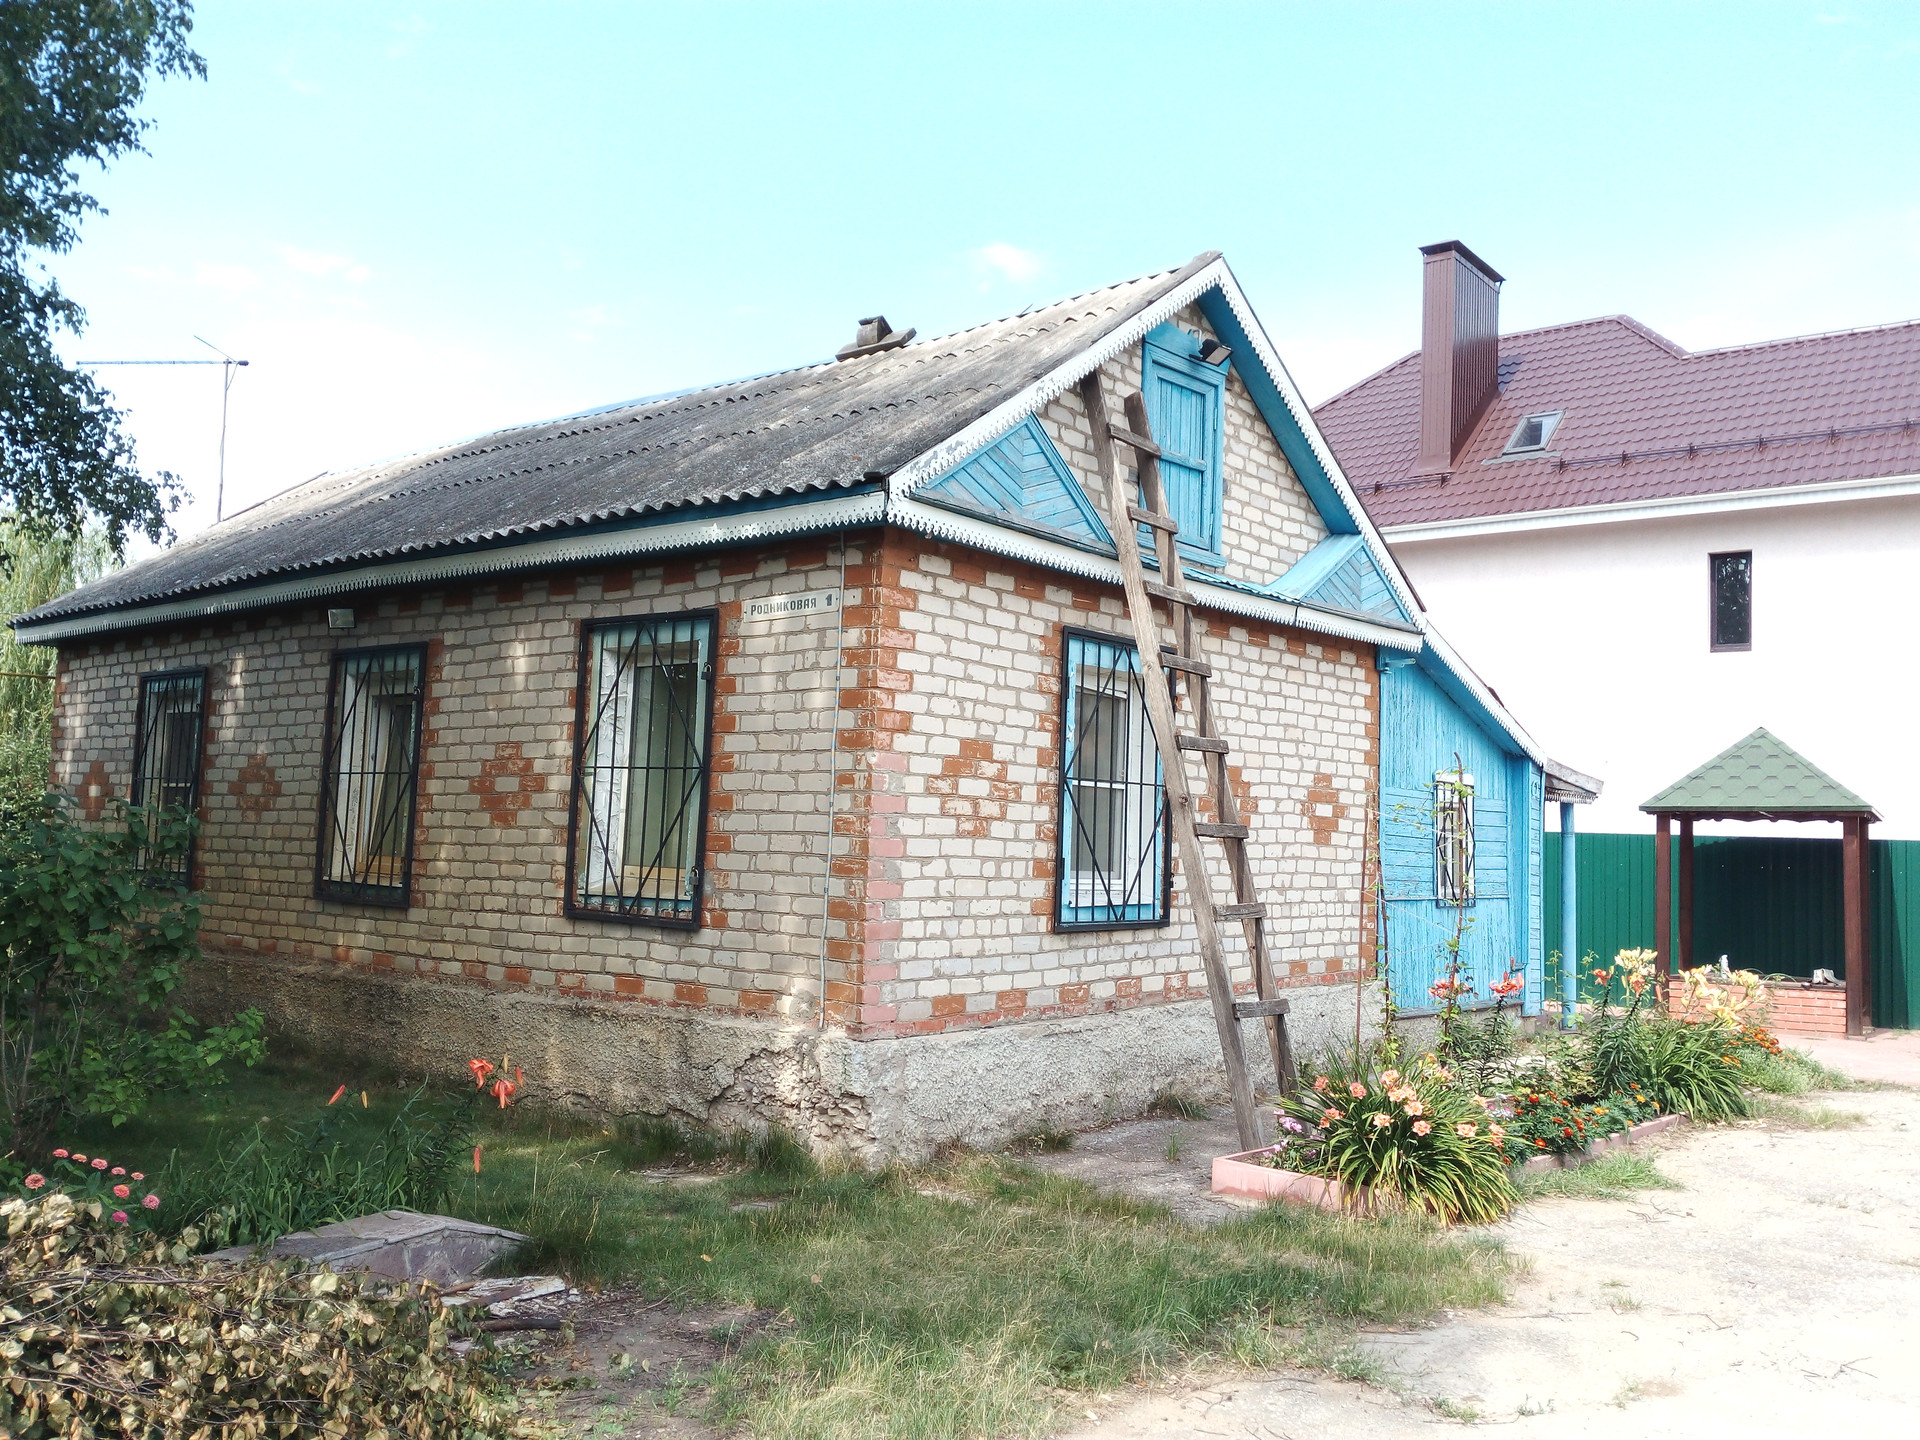 Продажа домов в ефремове тульской области на авито с фото без посредников